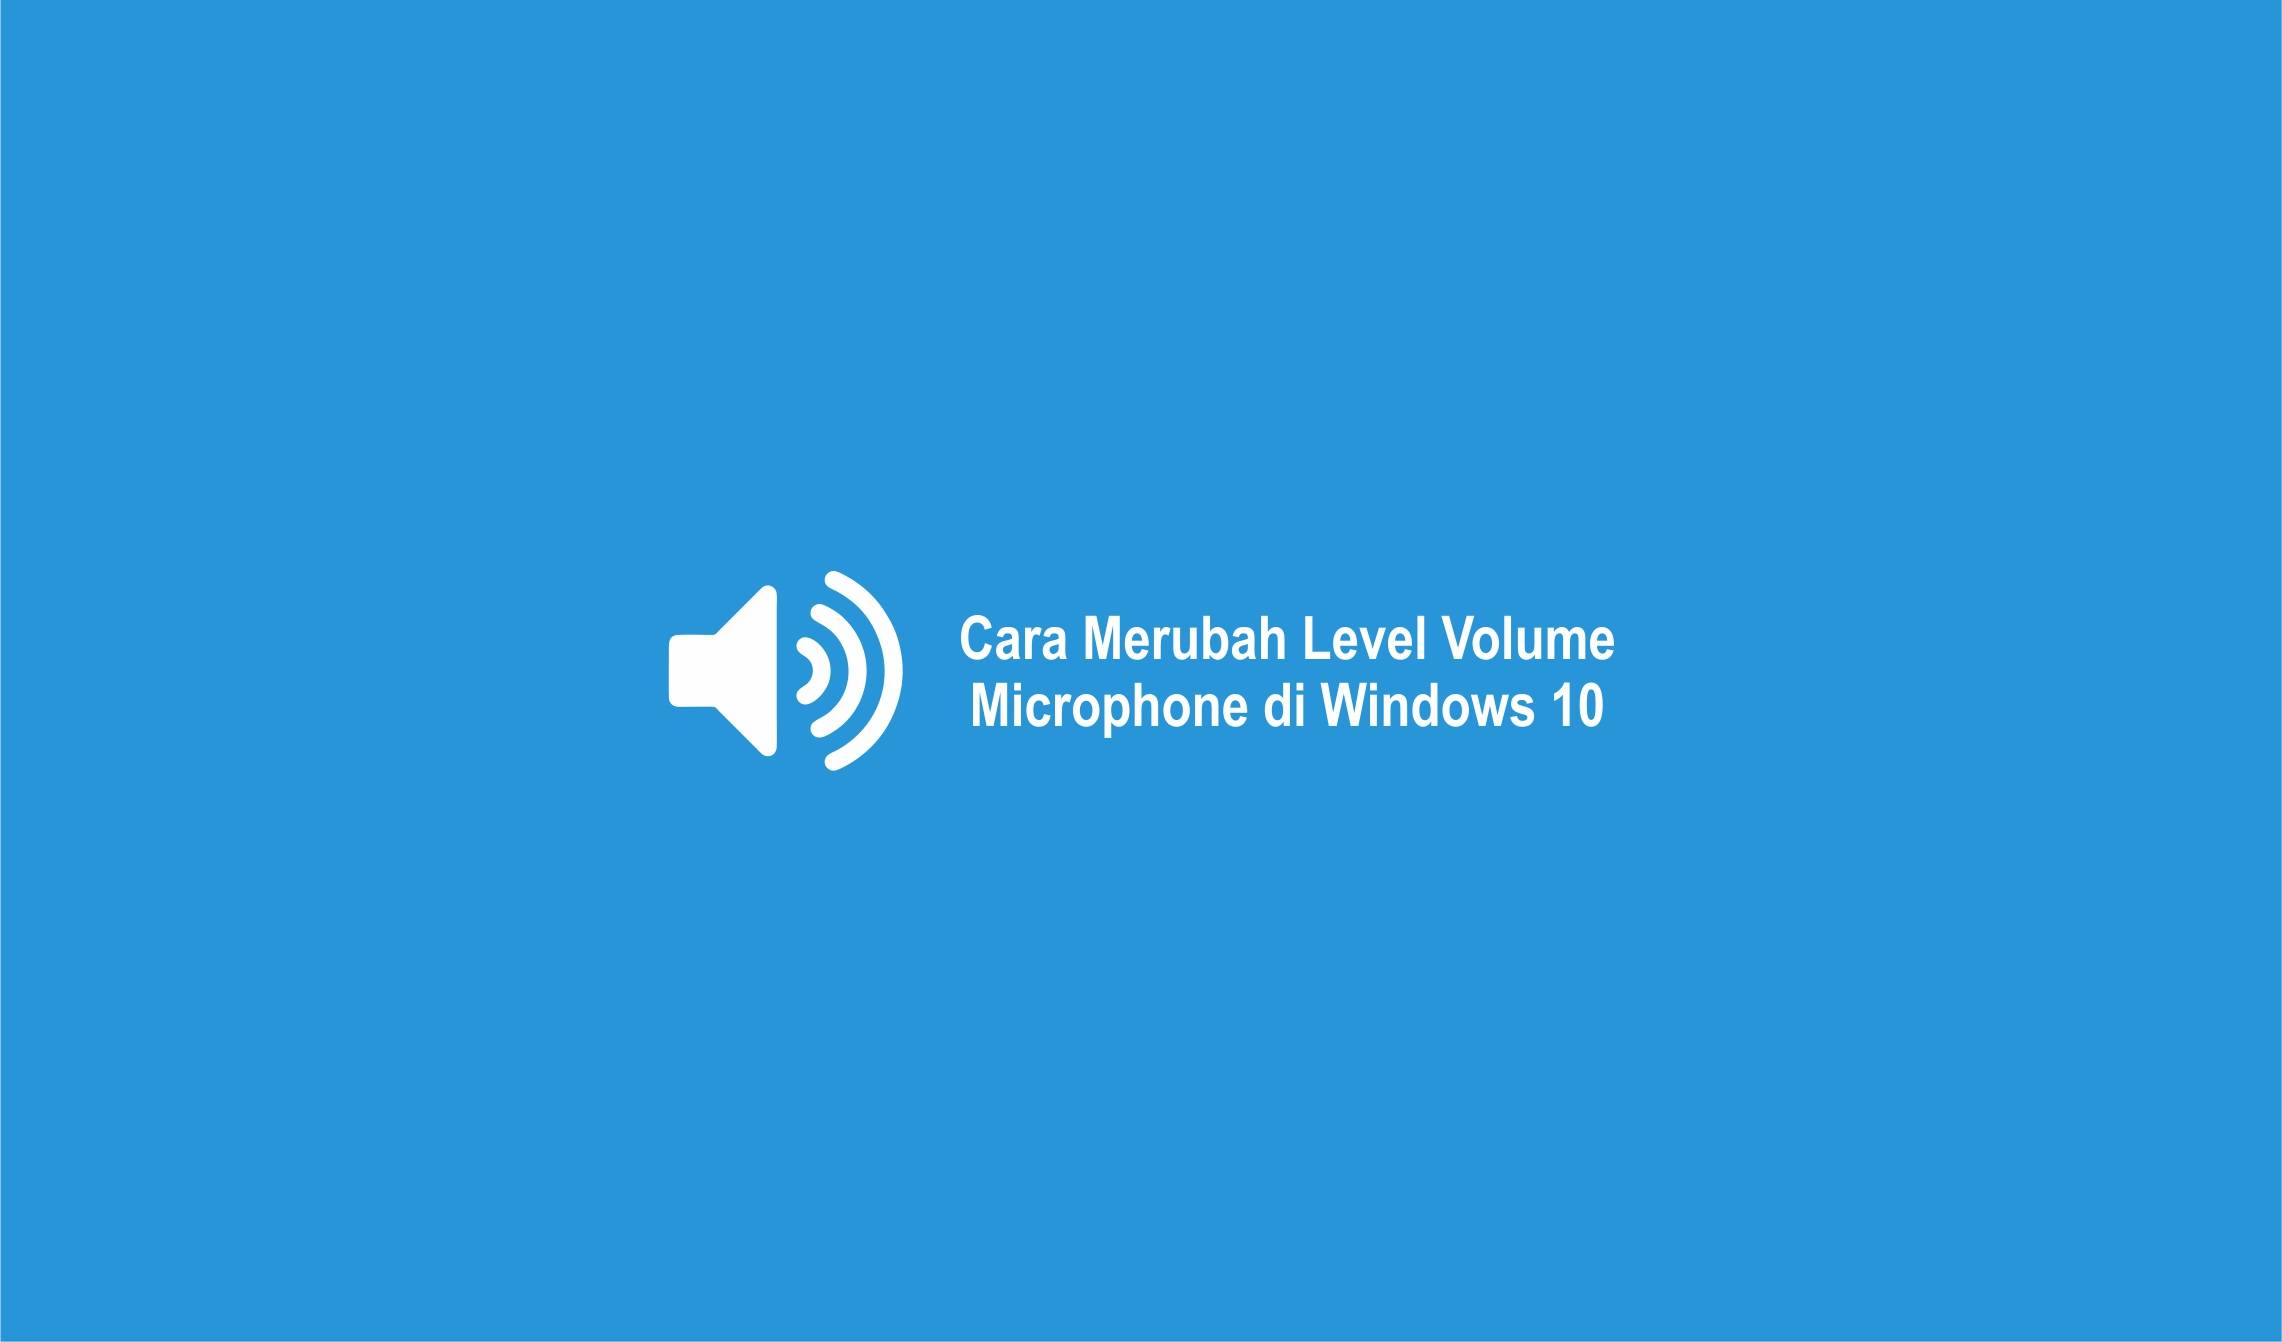 Cara Merubah Level Volume Microphone di Windows 10-compressed